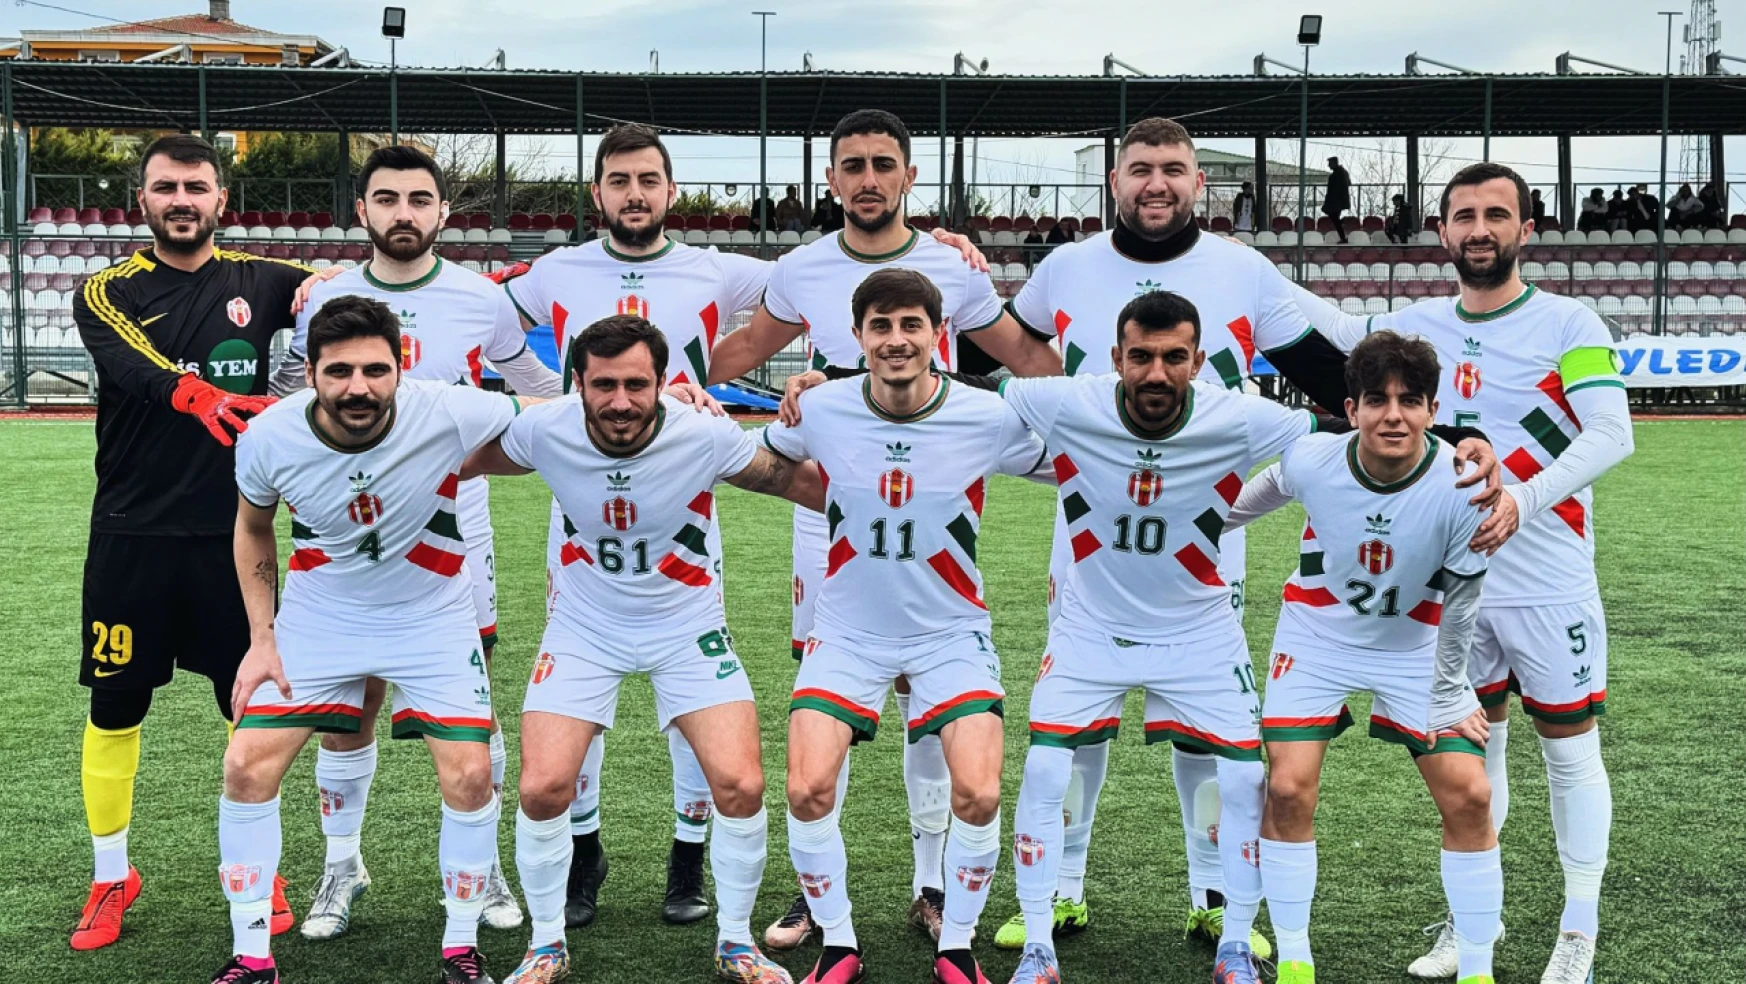 Selimpaşa, Karadeniz'i Ahmet Temizel ile geçti 4-0